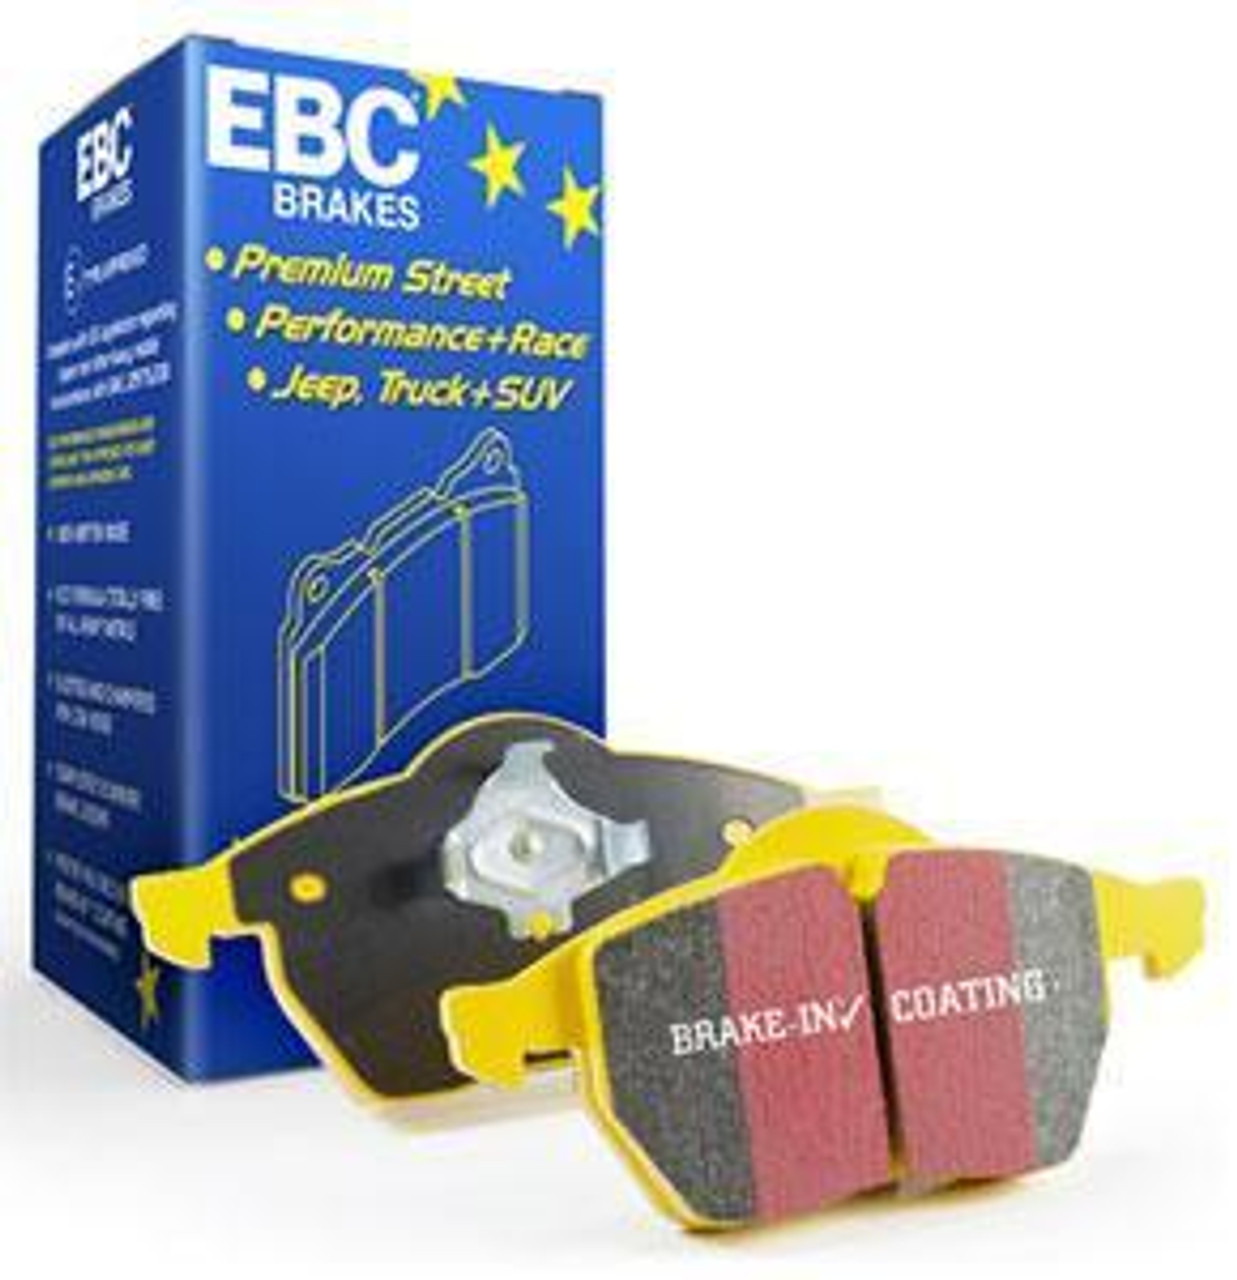 EBC Brakes Yellowstuff Rear Brake Pads | 350Z/G35/STI